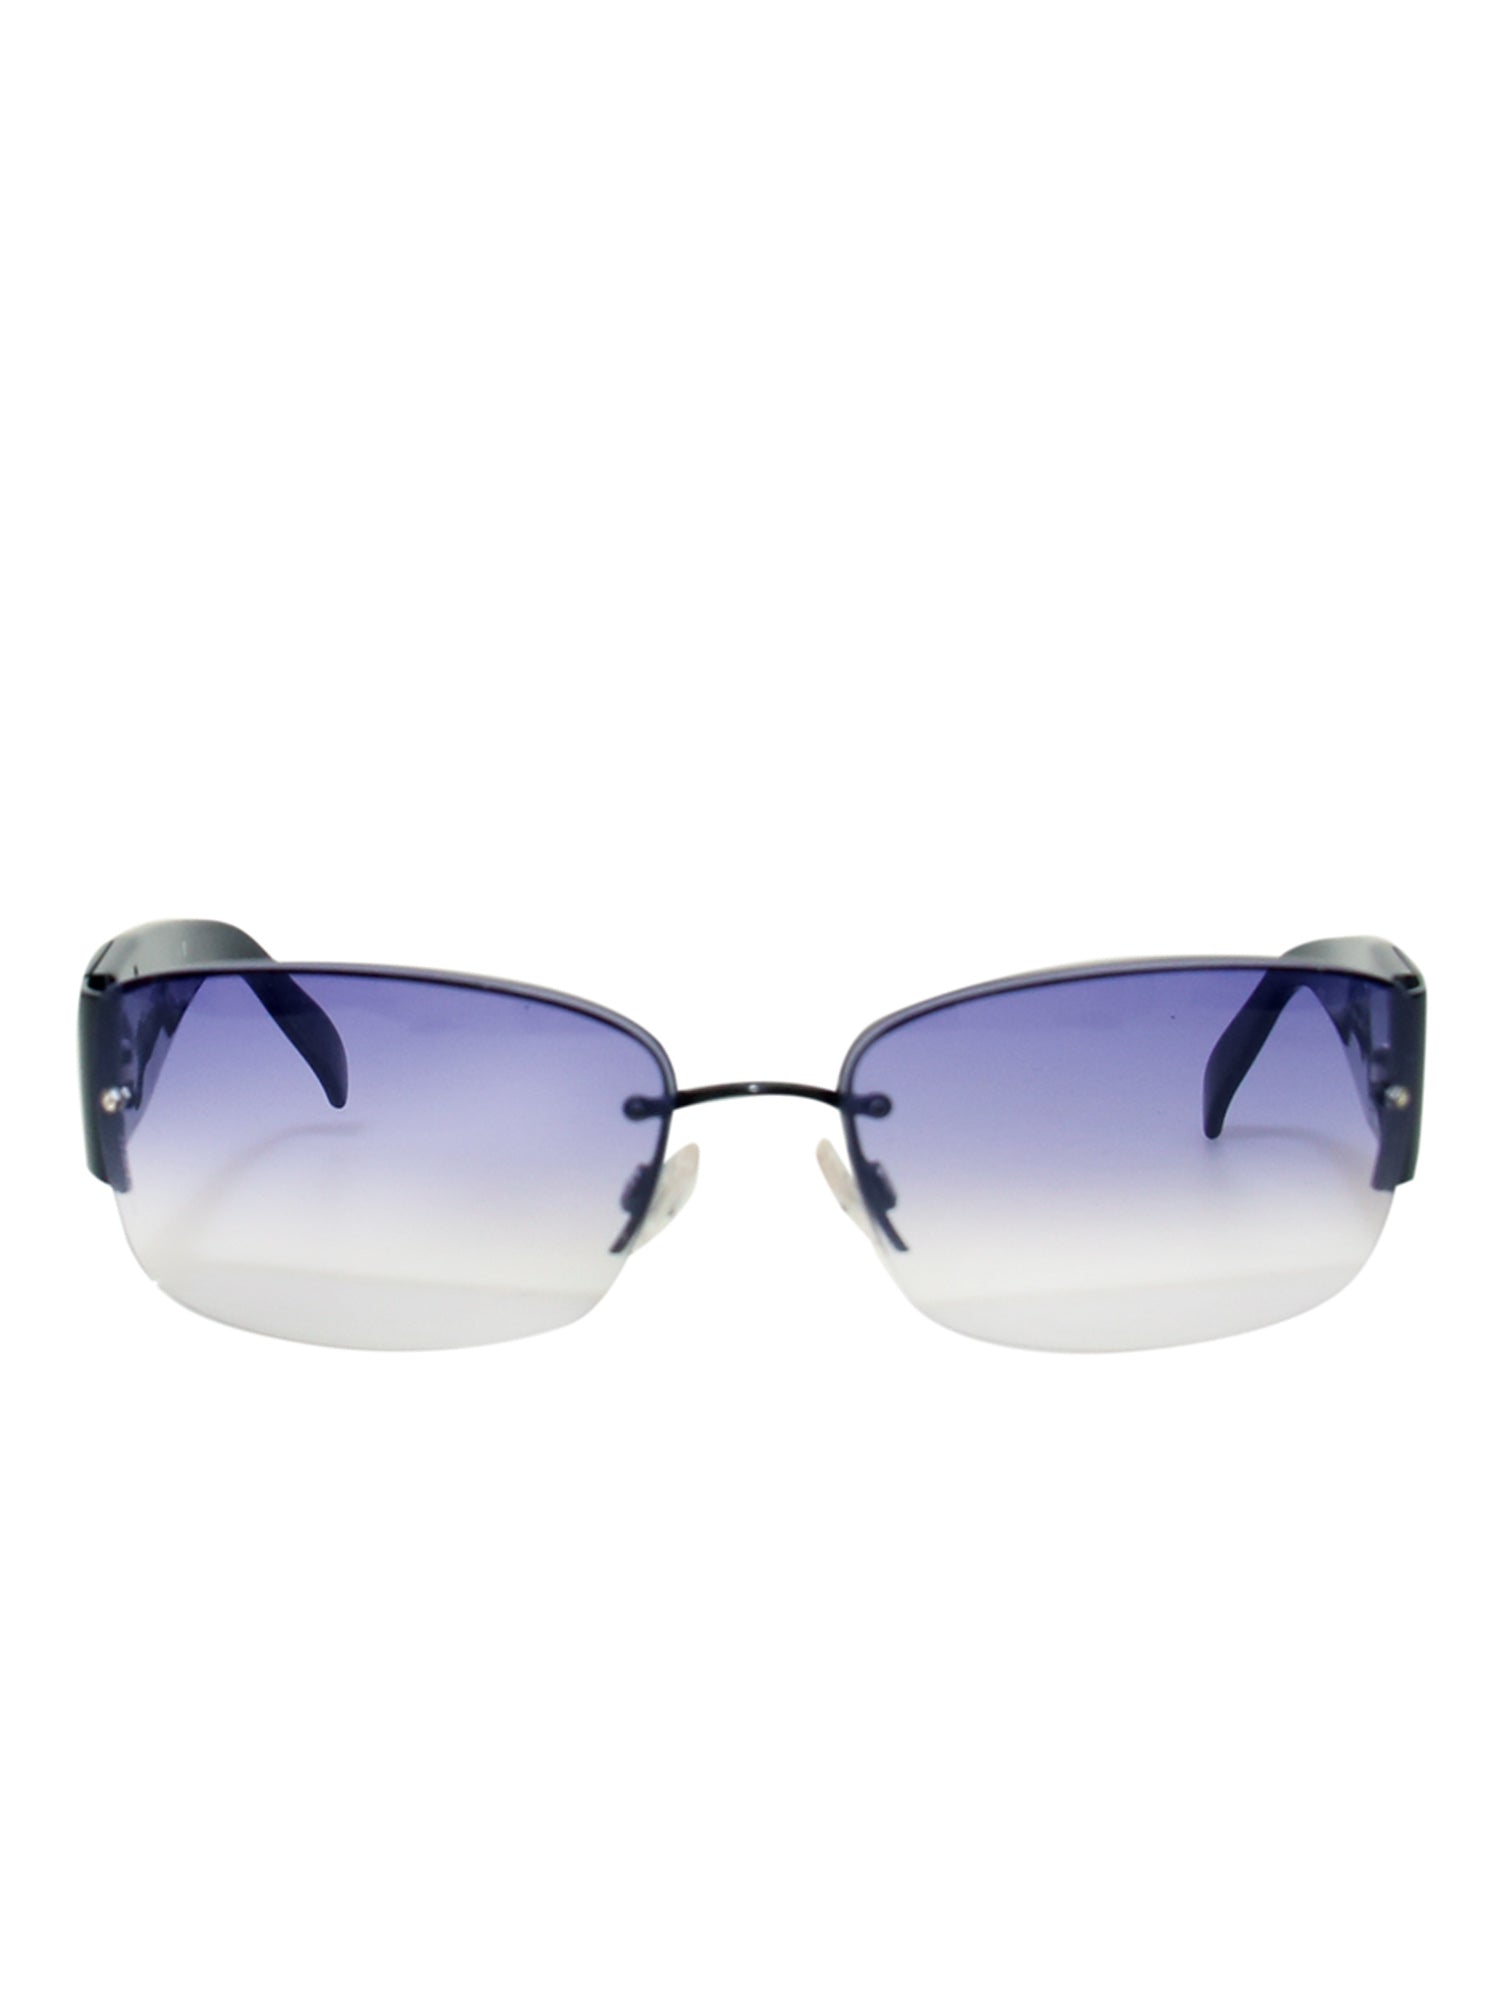 CÉLINE Tortoise Shell Sunglasses for Women